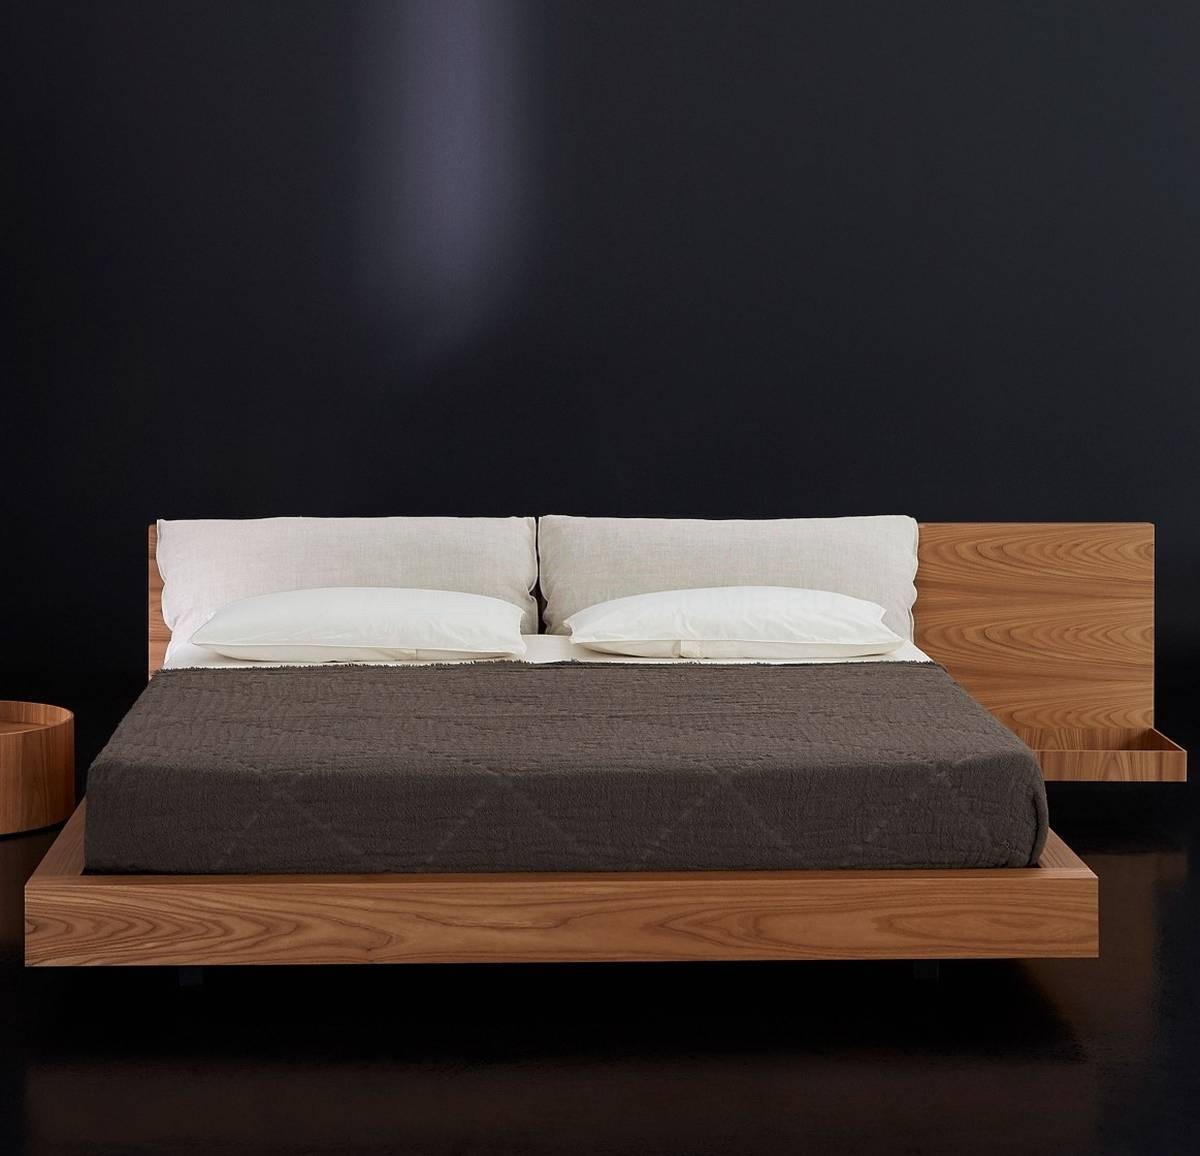 Кровать с деревянным изголовьем Tiako из Италии фабрики PORRO